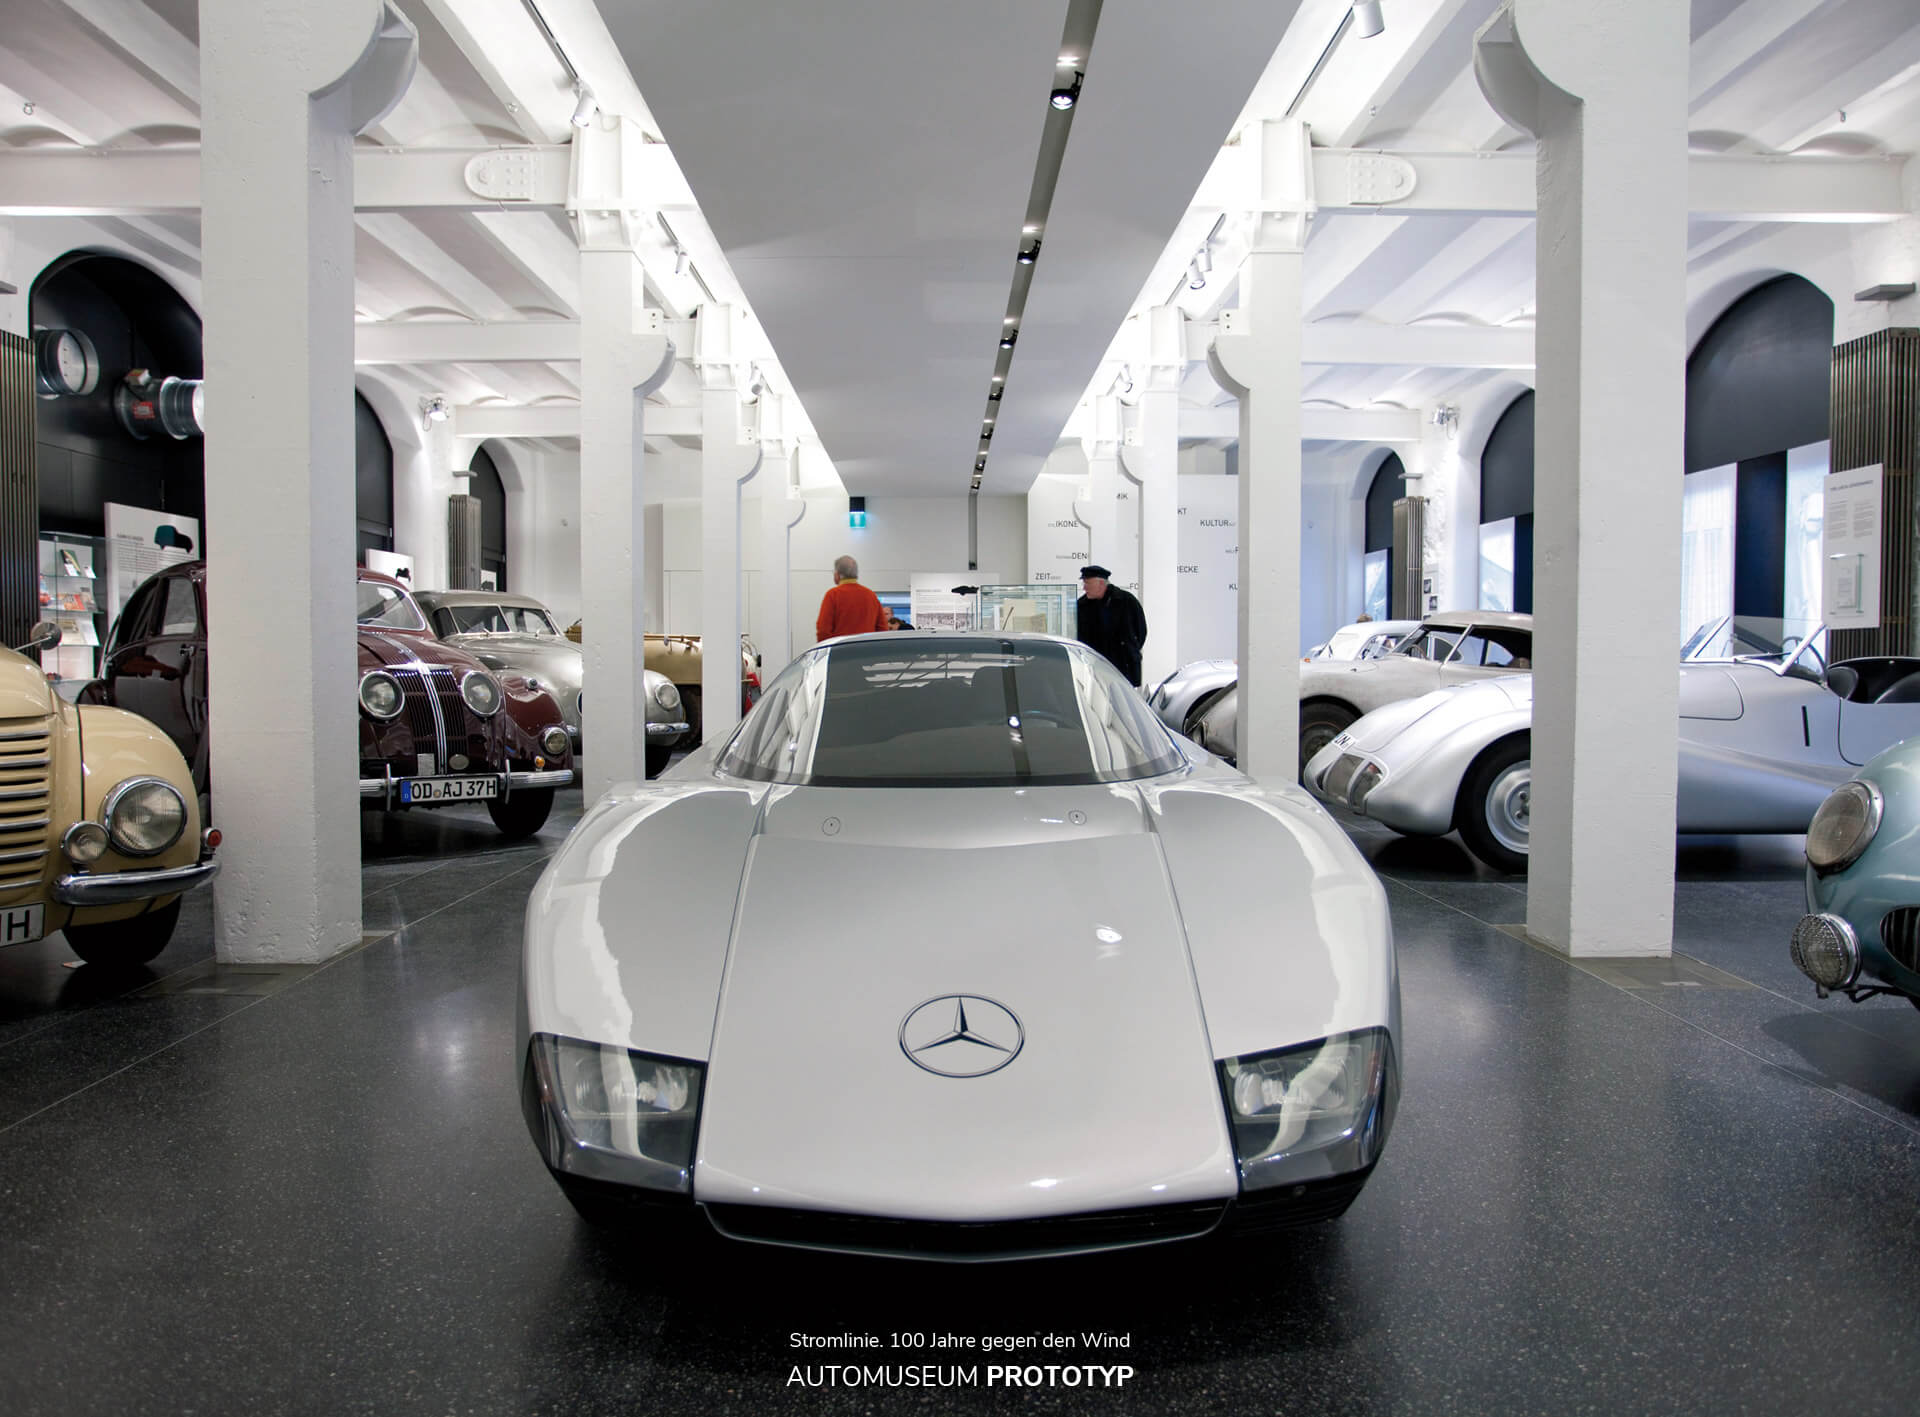 2009 präsentierte das Hamburger Automuseum Prototyp mit der Sonderausstellung „Stromlinie“ außergewöhnliche aerodynamische Fahrzeuge, wie den Porsche Typ 64 oder den Mercedes-Benz C 111-3 Nardo.